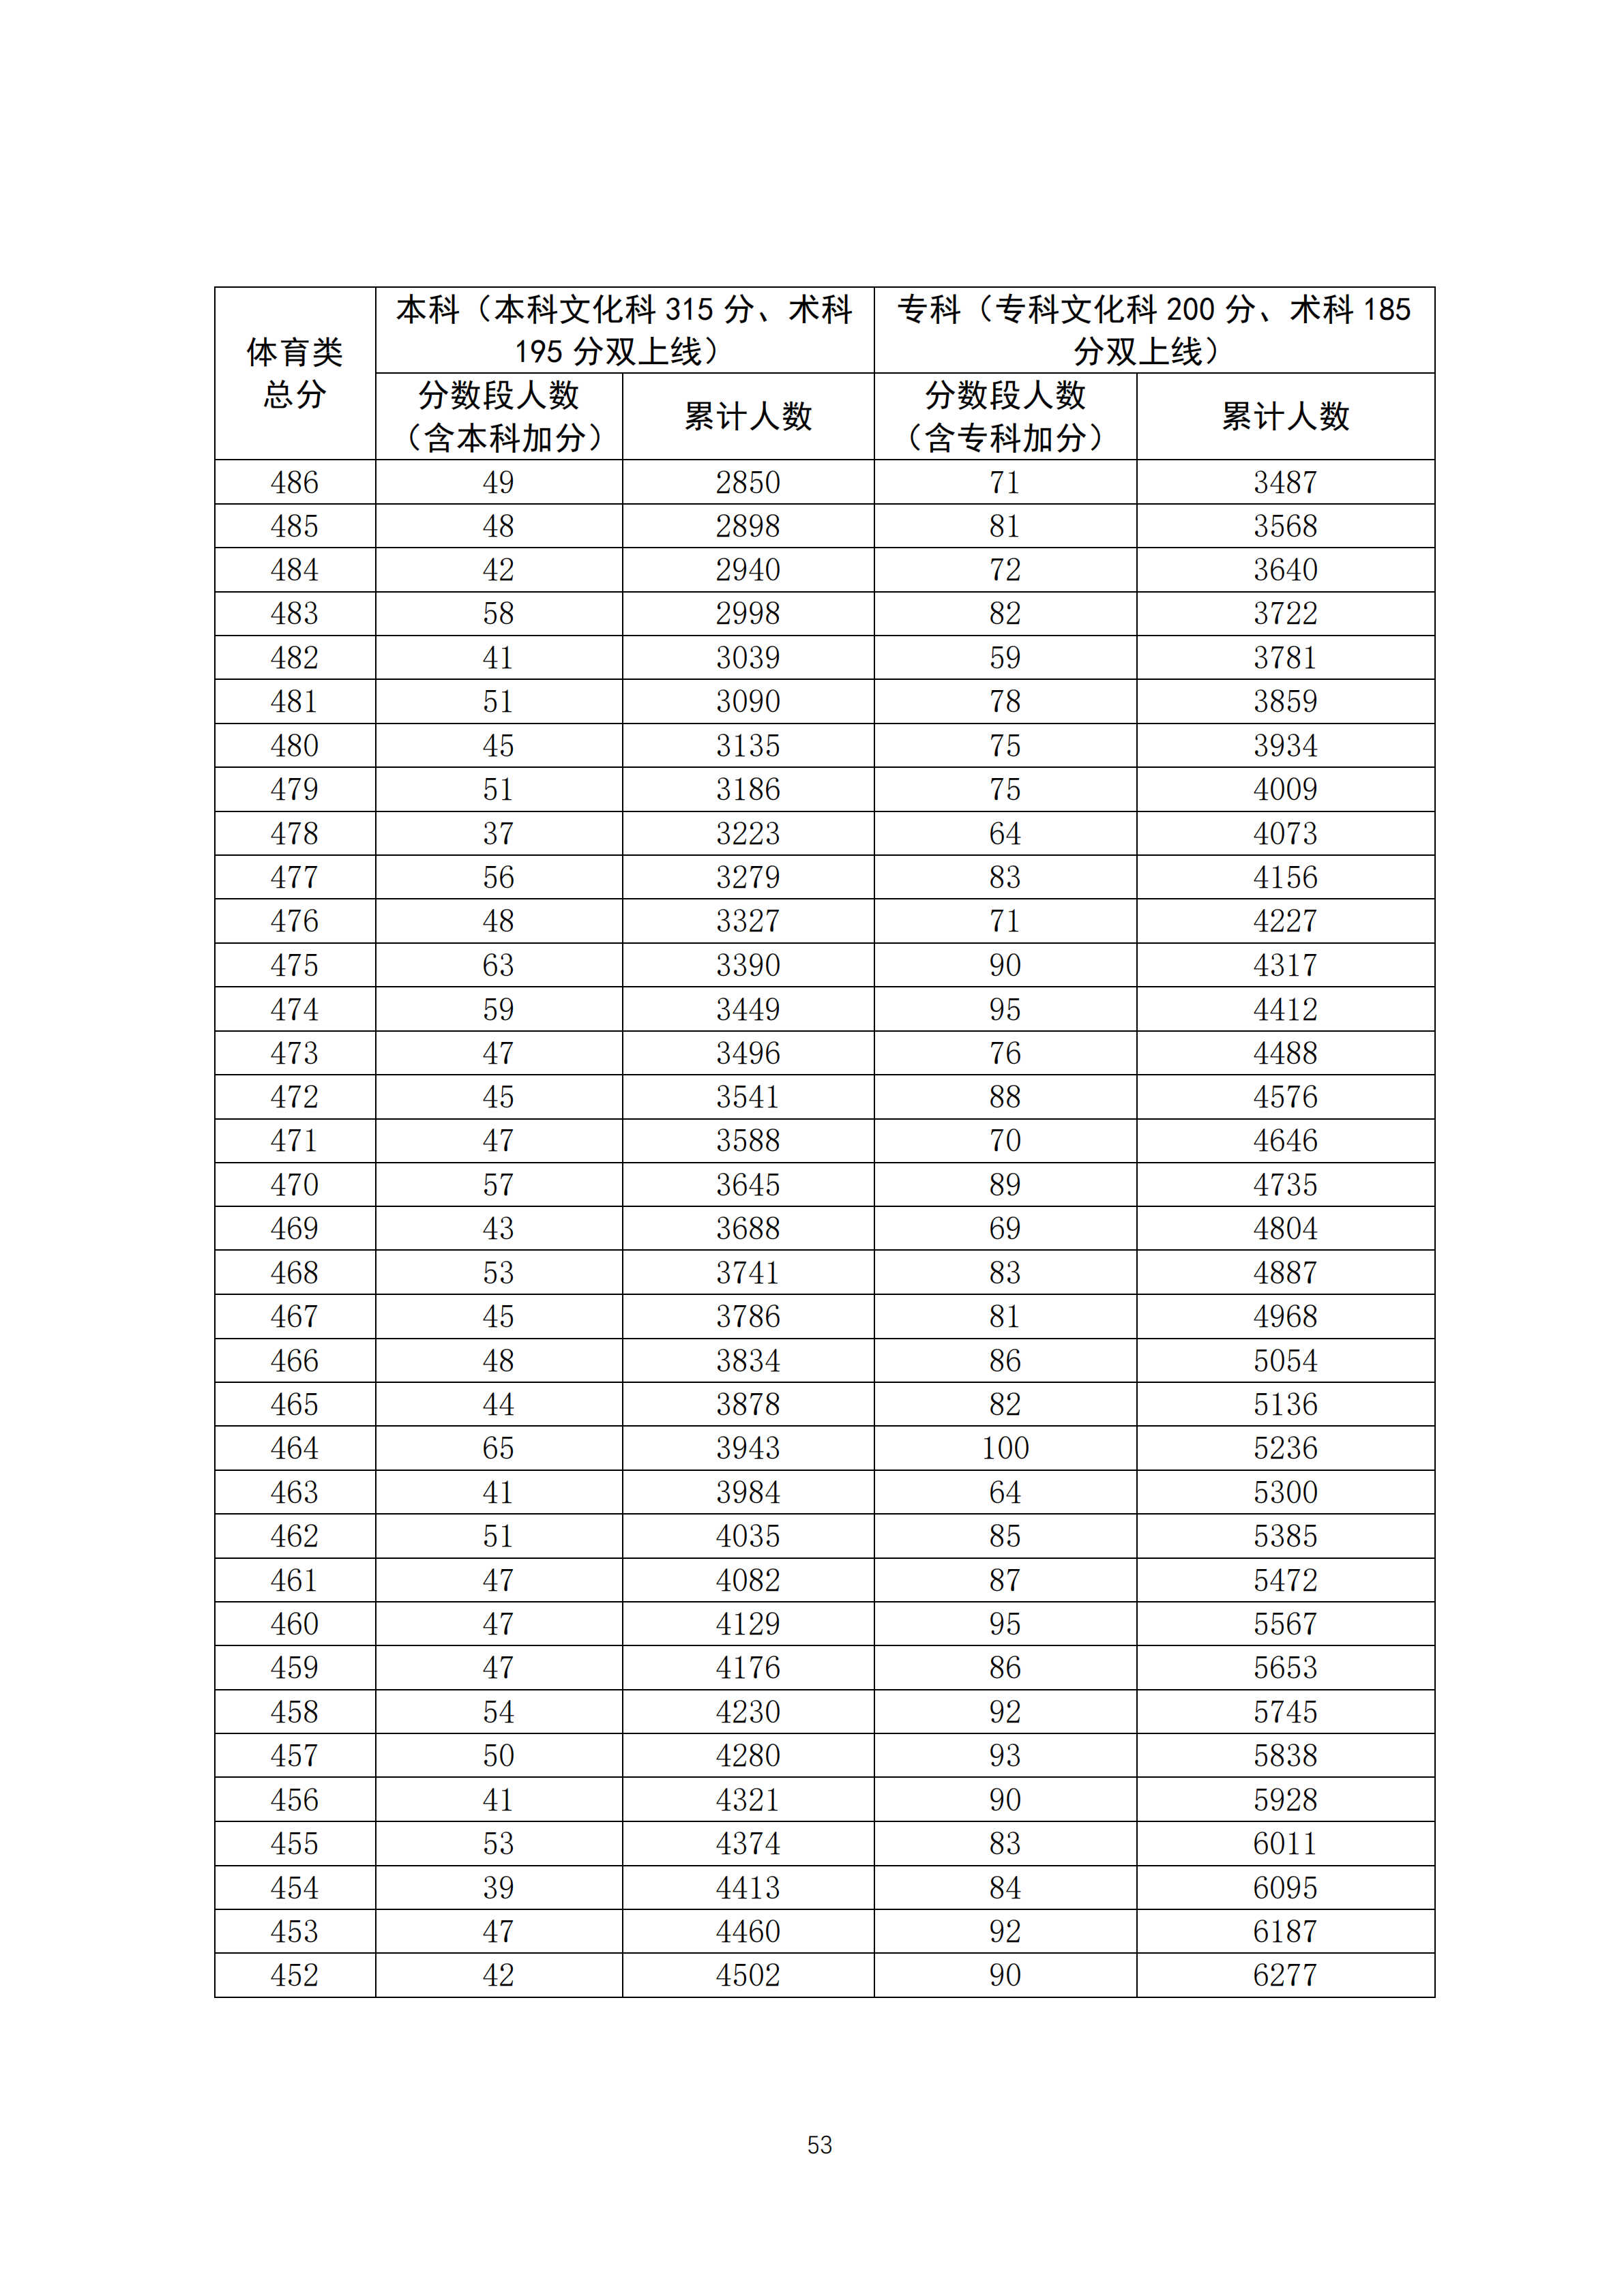 2020广东高考一分一段表 体育类成绩排名